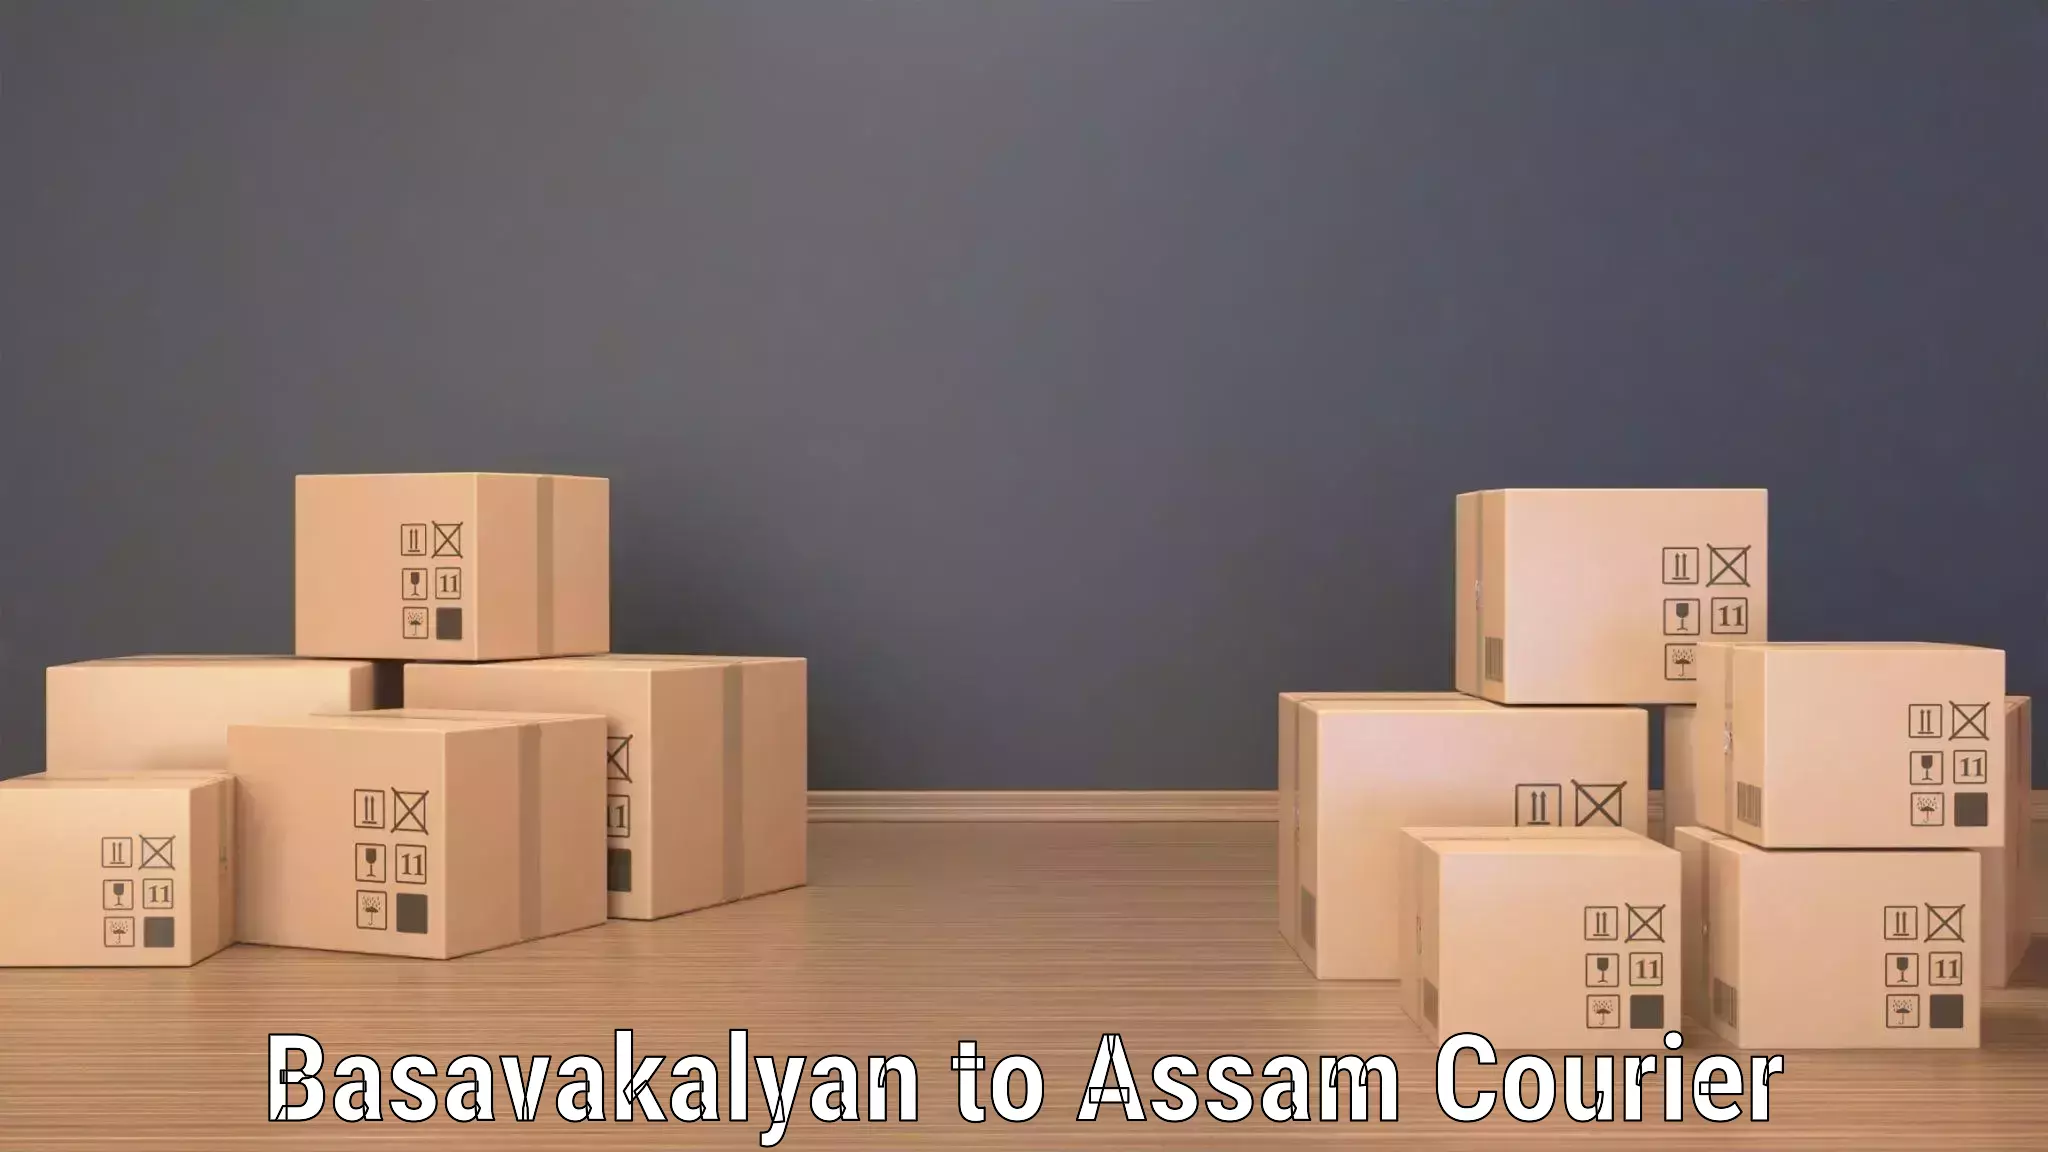 High-performance logistics Basavakalyan to Sonabarighat